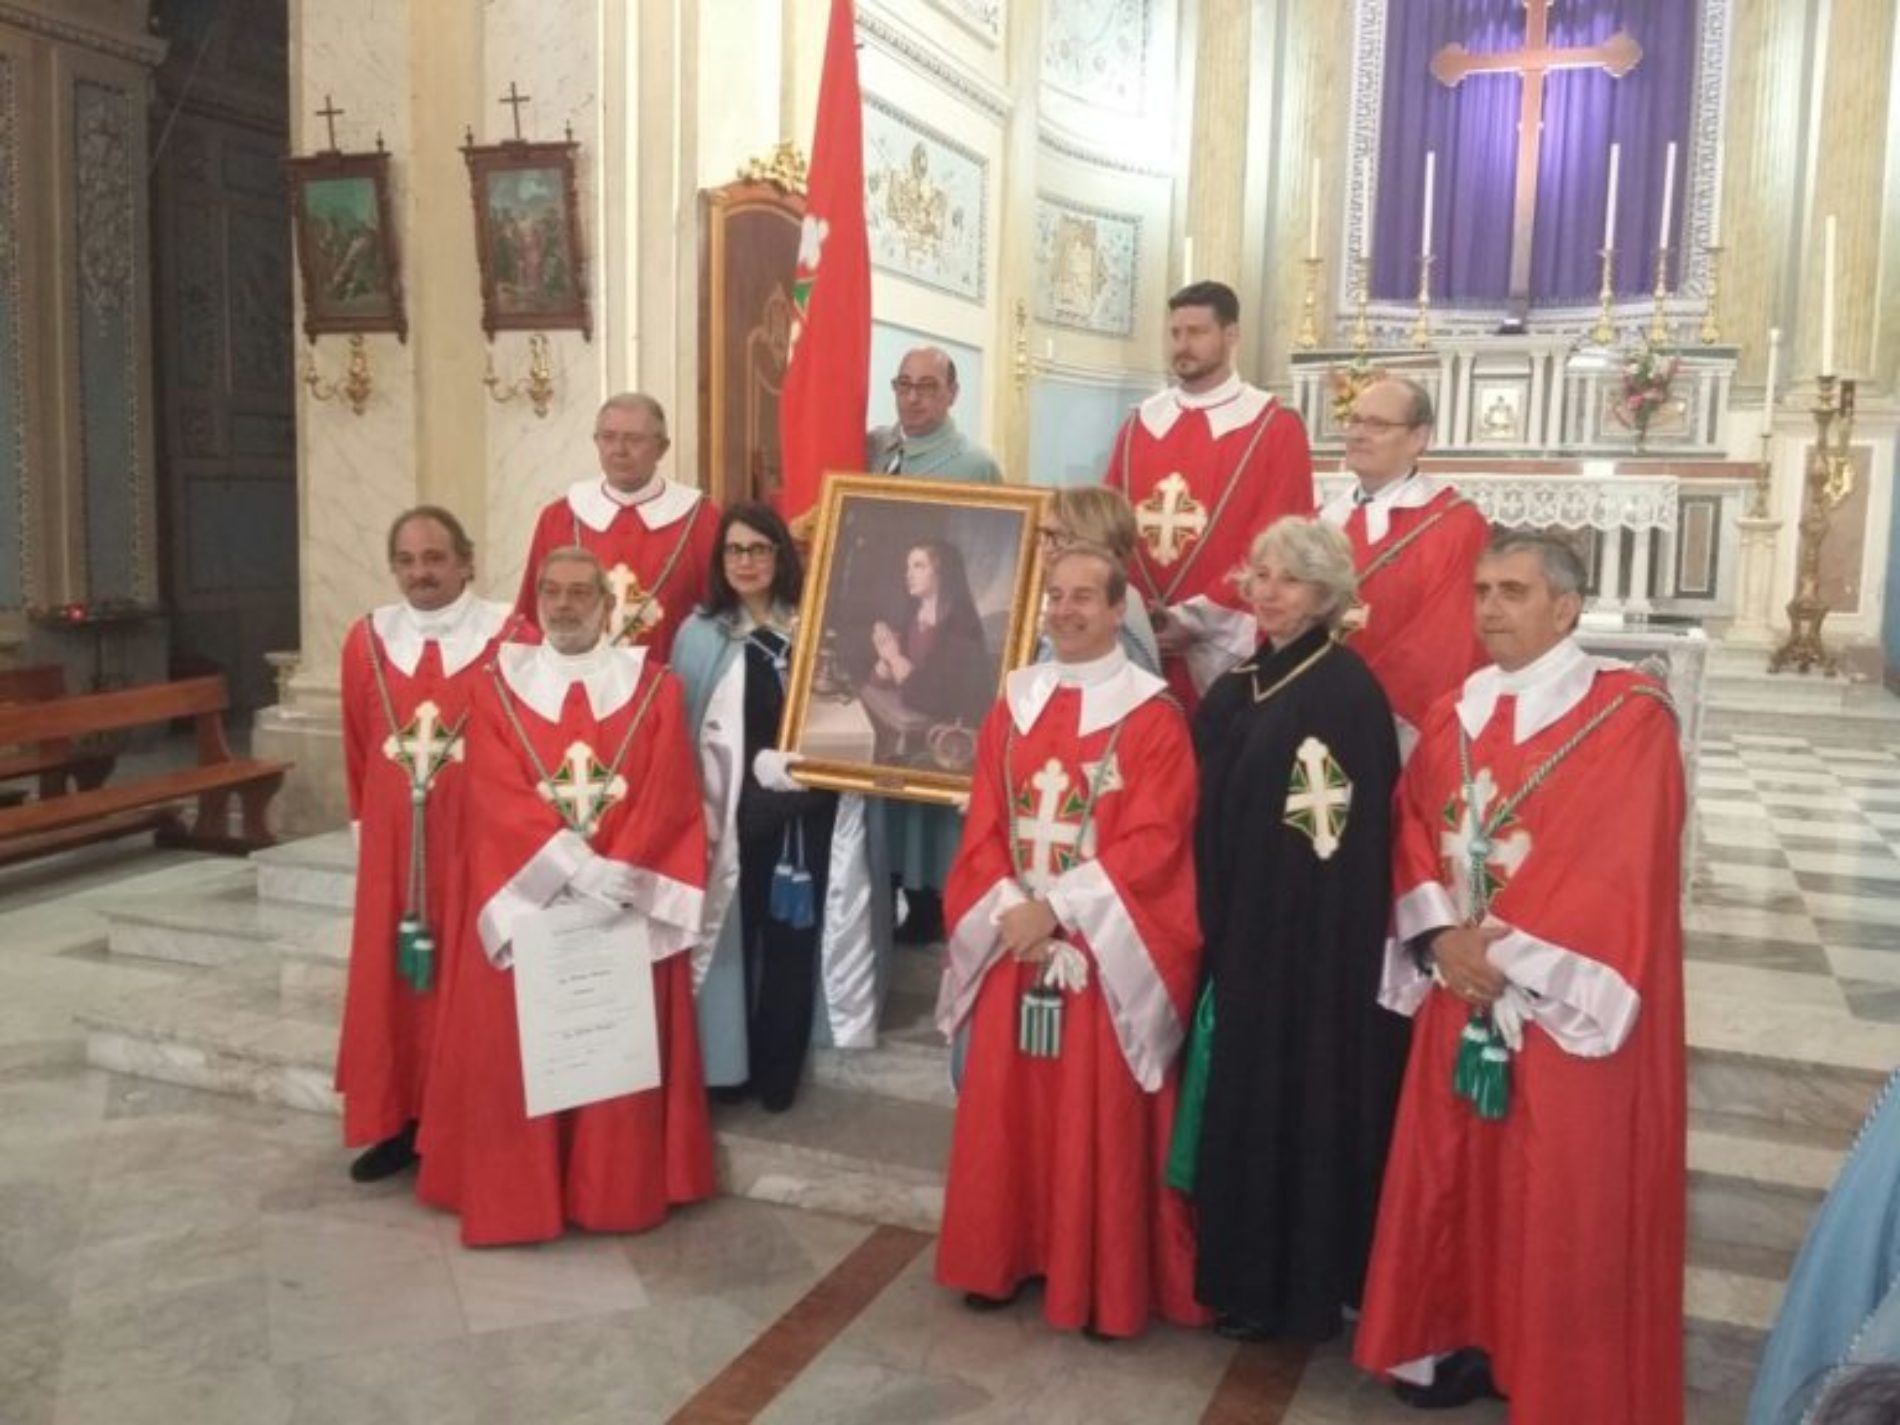 Barrafranca. Donata una tela della Beata Maria Cristina di Savoia alla chiesa Madre